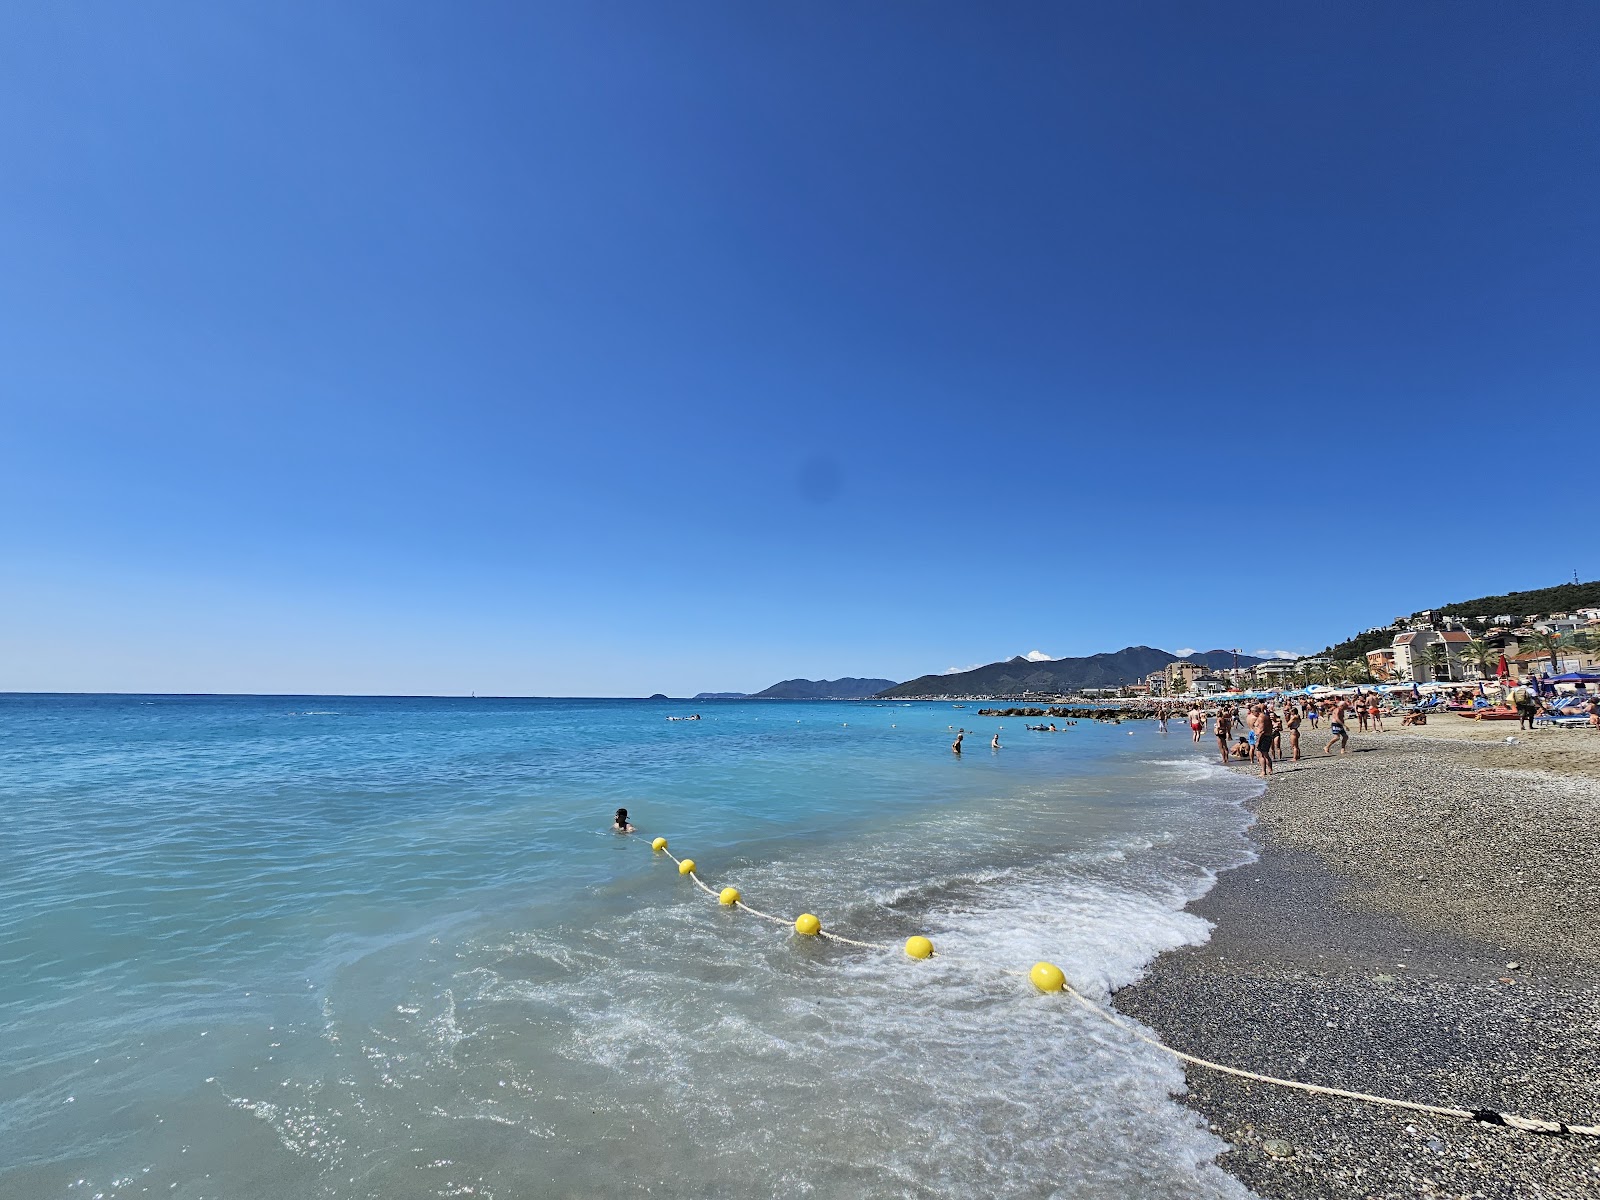 Spiaggia di Borgio'in fotoğrafı geniş plaj ile birlikte